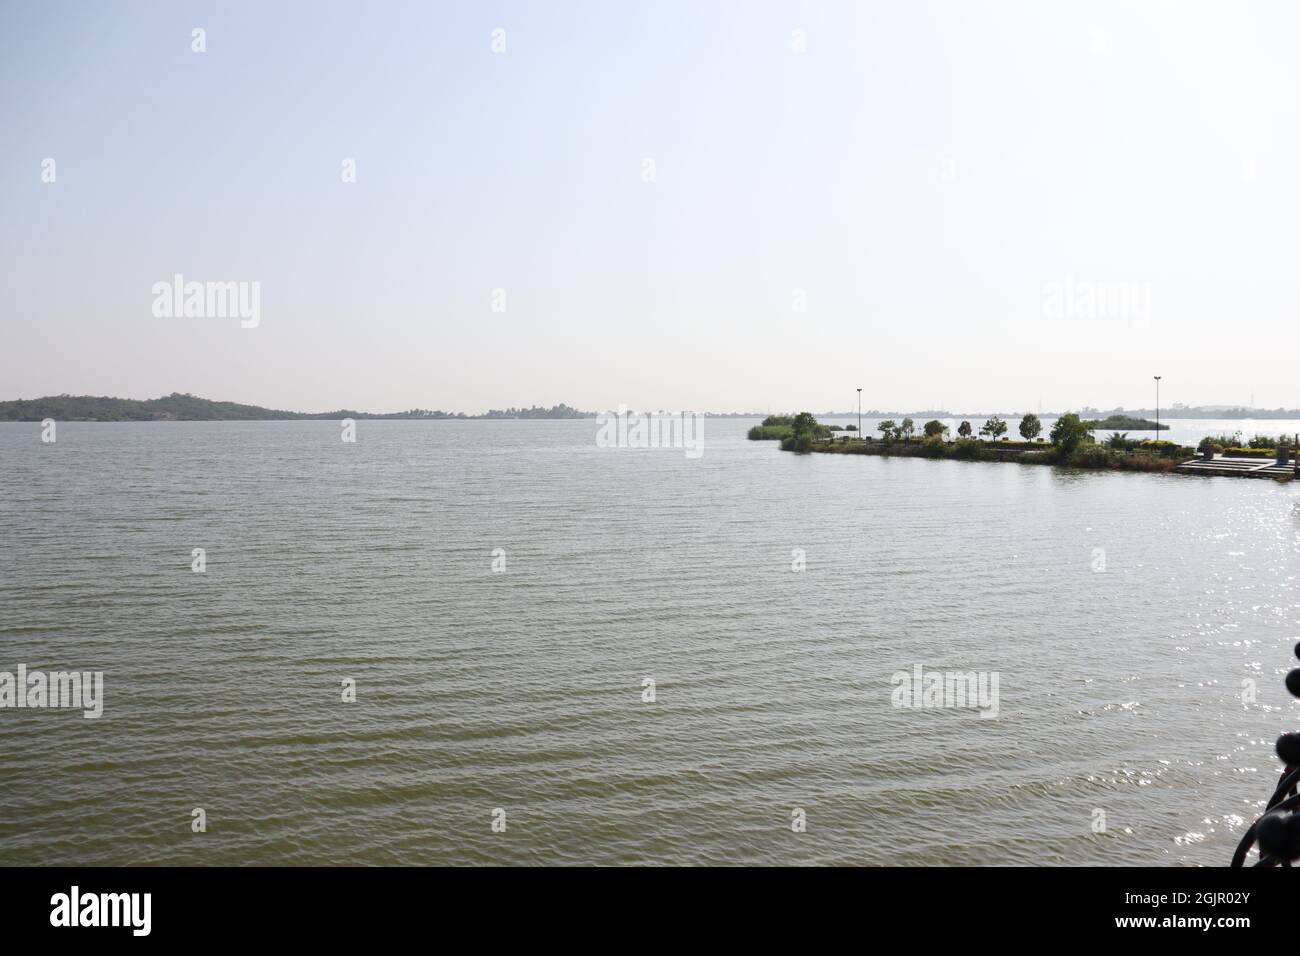 vue sur le lac |parc|eau, verdure, montagnes, ciel, canotage Banque D'Images